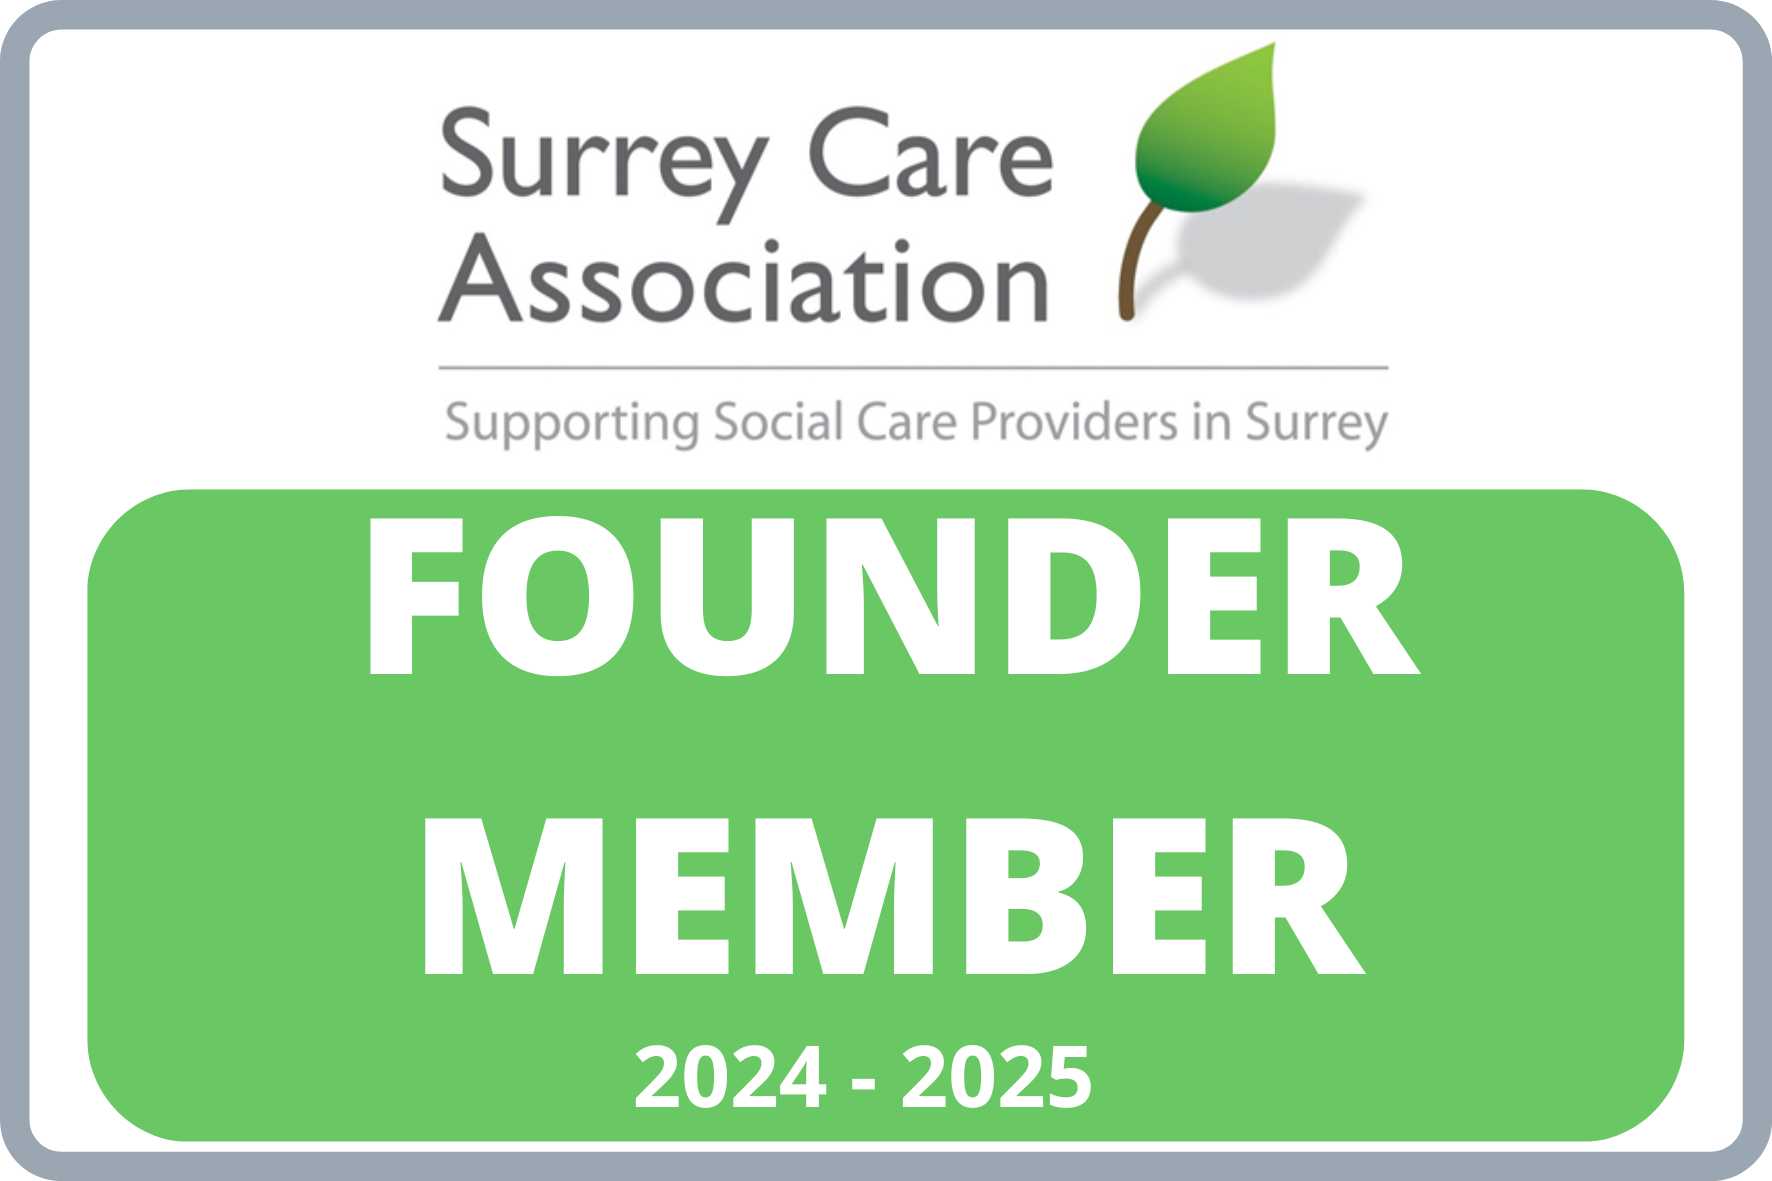 Surrey Care Association founder member logo